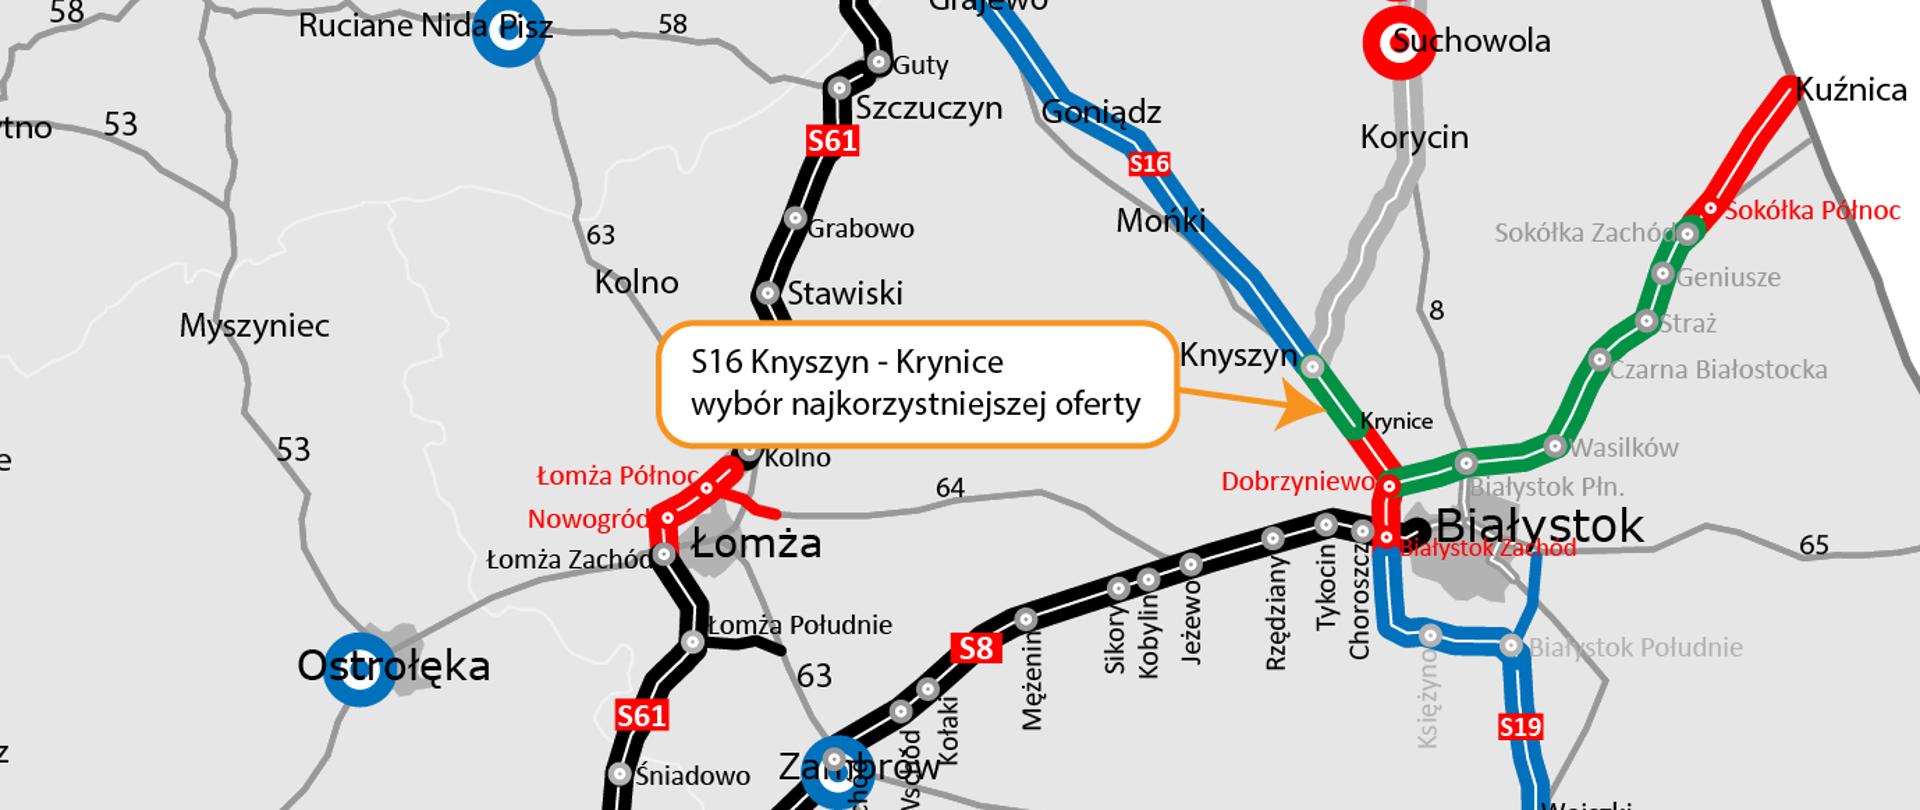 Mapa północno - wschodniej Polski z siecią dróg i etapem prac na jakim się znajdują. 